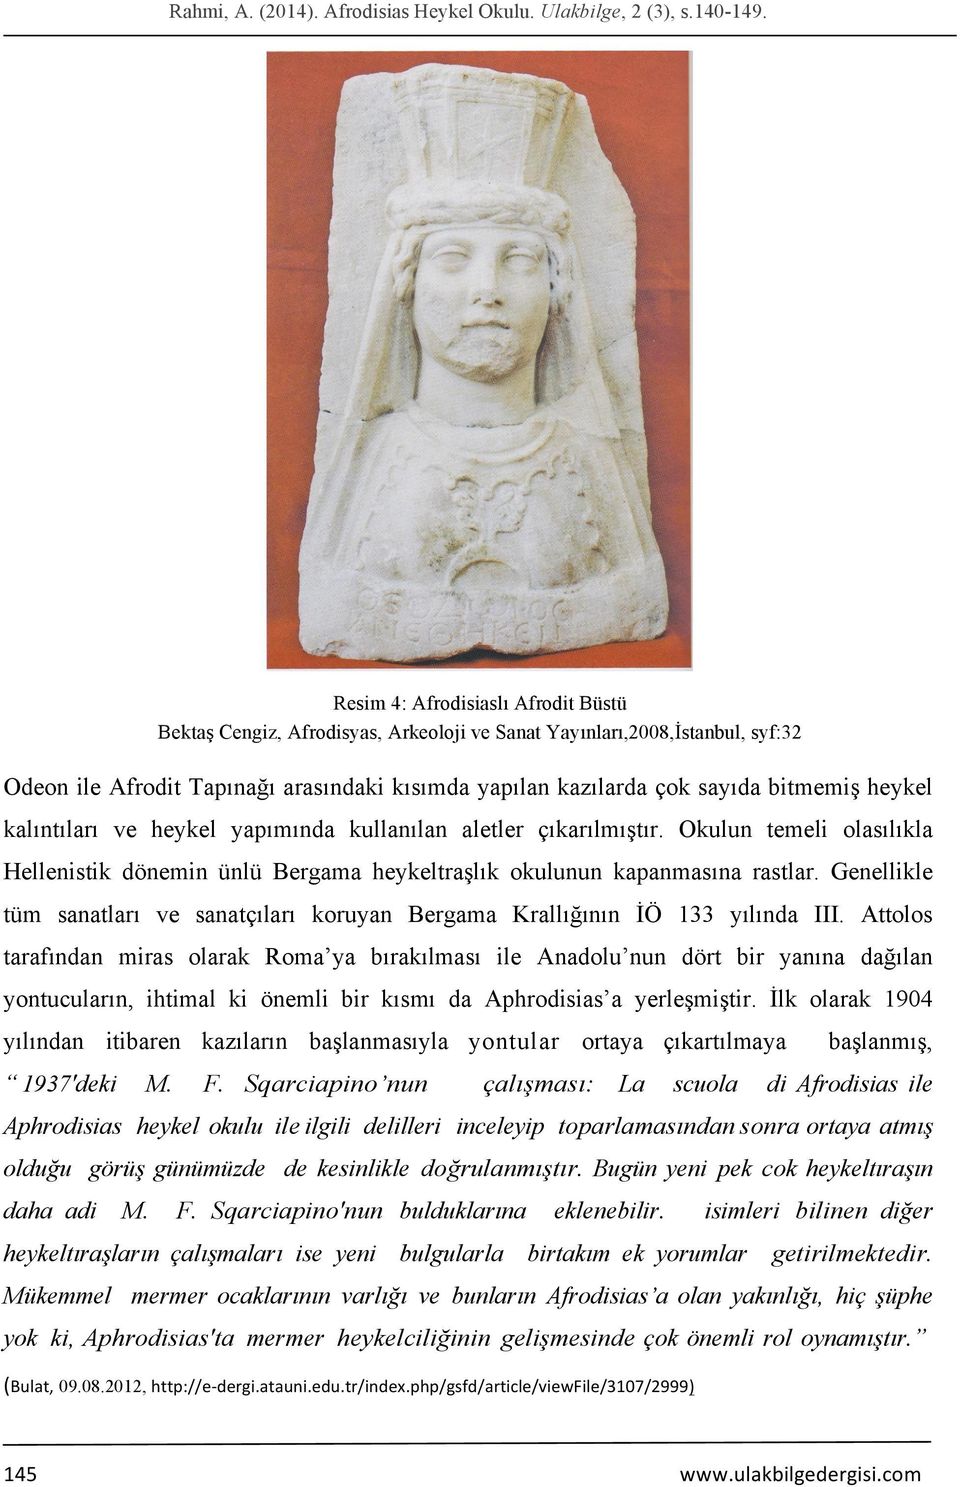 heykel kalıntıları ve heykel yapımında kullanılan aletler çıkarılmıştır. Okulun temeli olasılıkla Hellenistik dönemin ünlü Bergama heykeltraşlık okulunun kapanmasına rastlar.